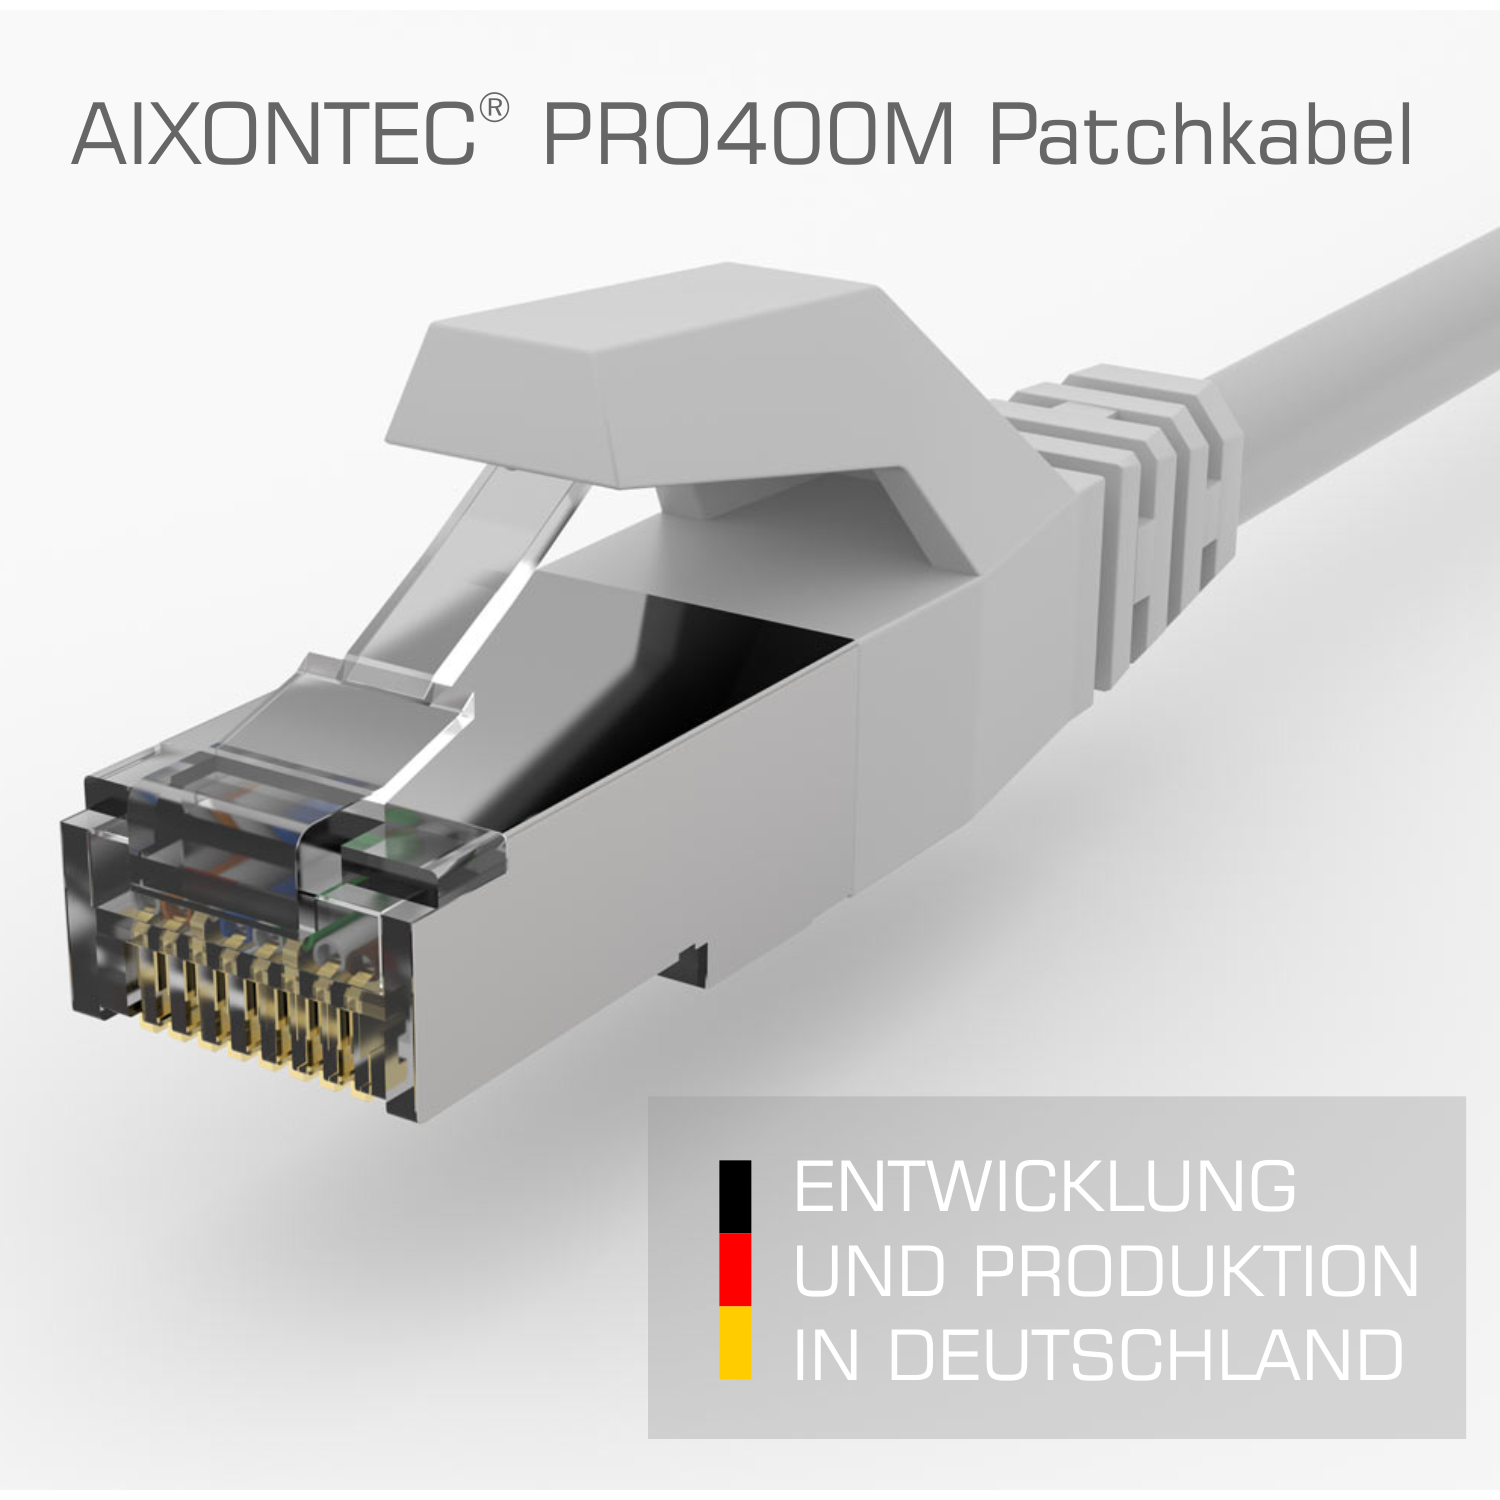 Netzwerkkabel, Lankabel 2,0 m Cat.6 10 Patchkabel 2,0m Ethernetkabel RJ45 Gigabit, AIXONTEC